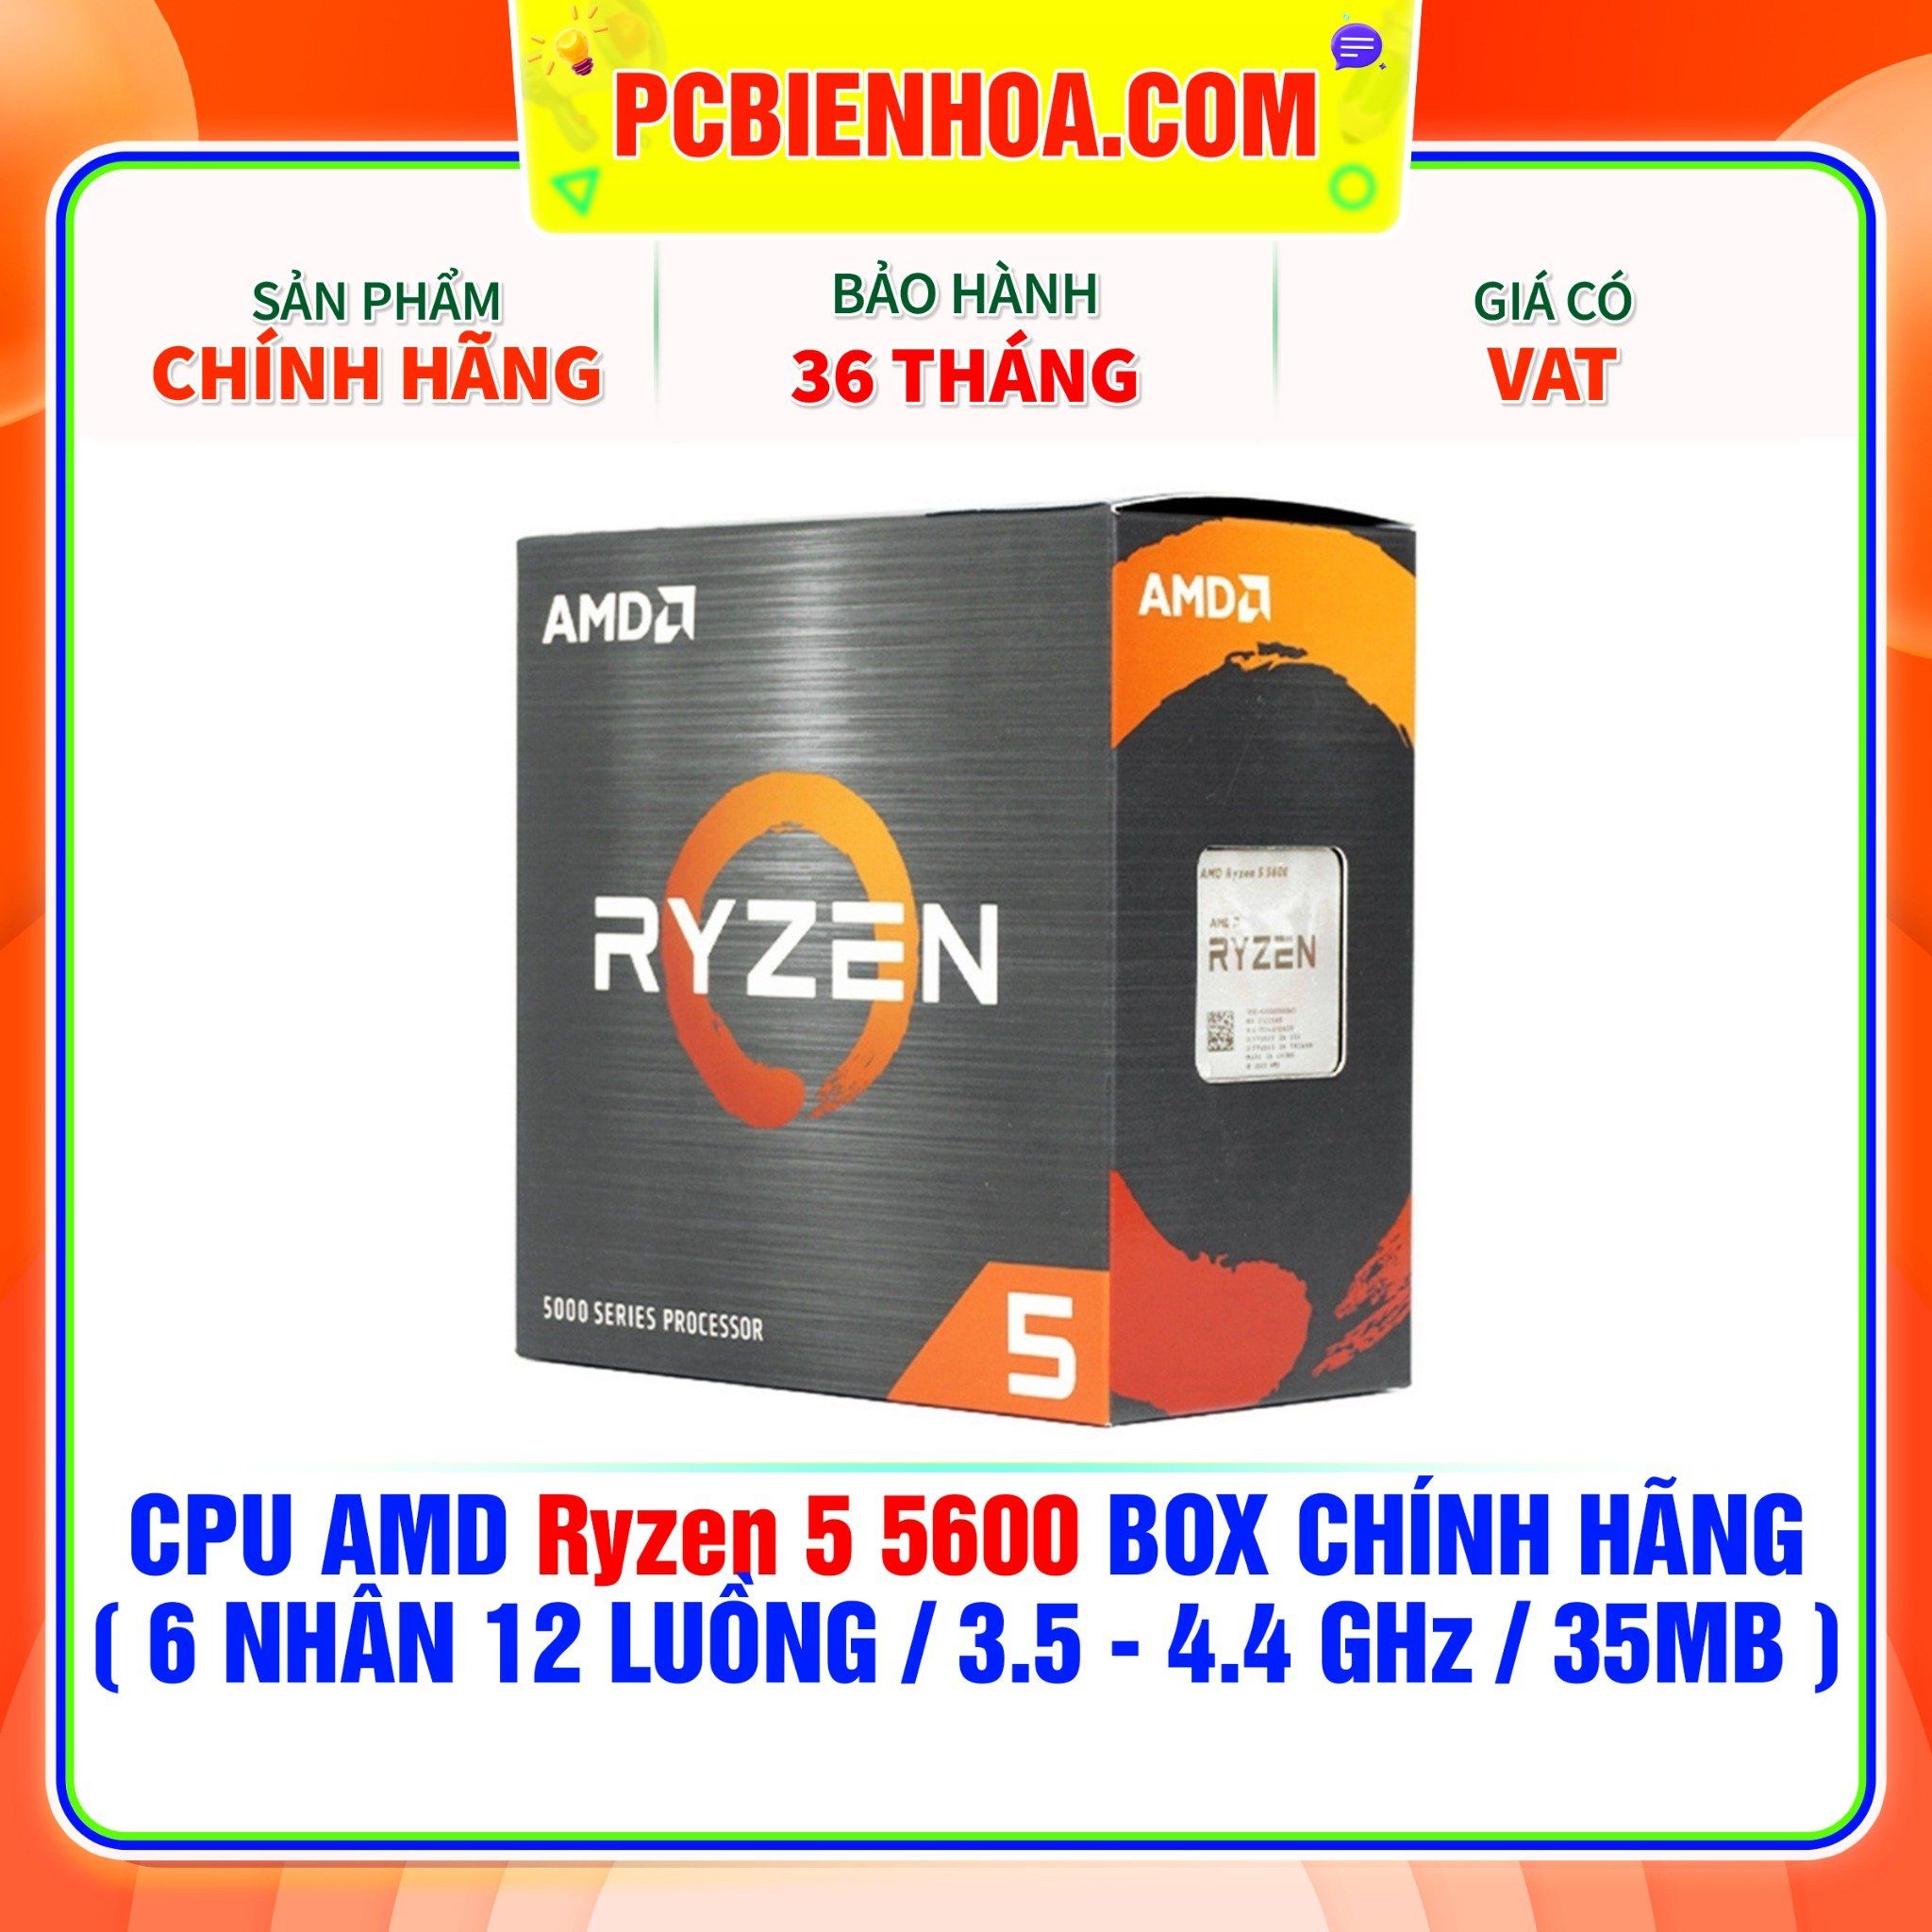  CPU AMD Ryzen 5 5600 BOX CHÍNH HÃNG ( 6 NHÂN 12 LUỒNG / 3.5 - 4.4 GHz / 35MB ) 